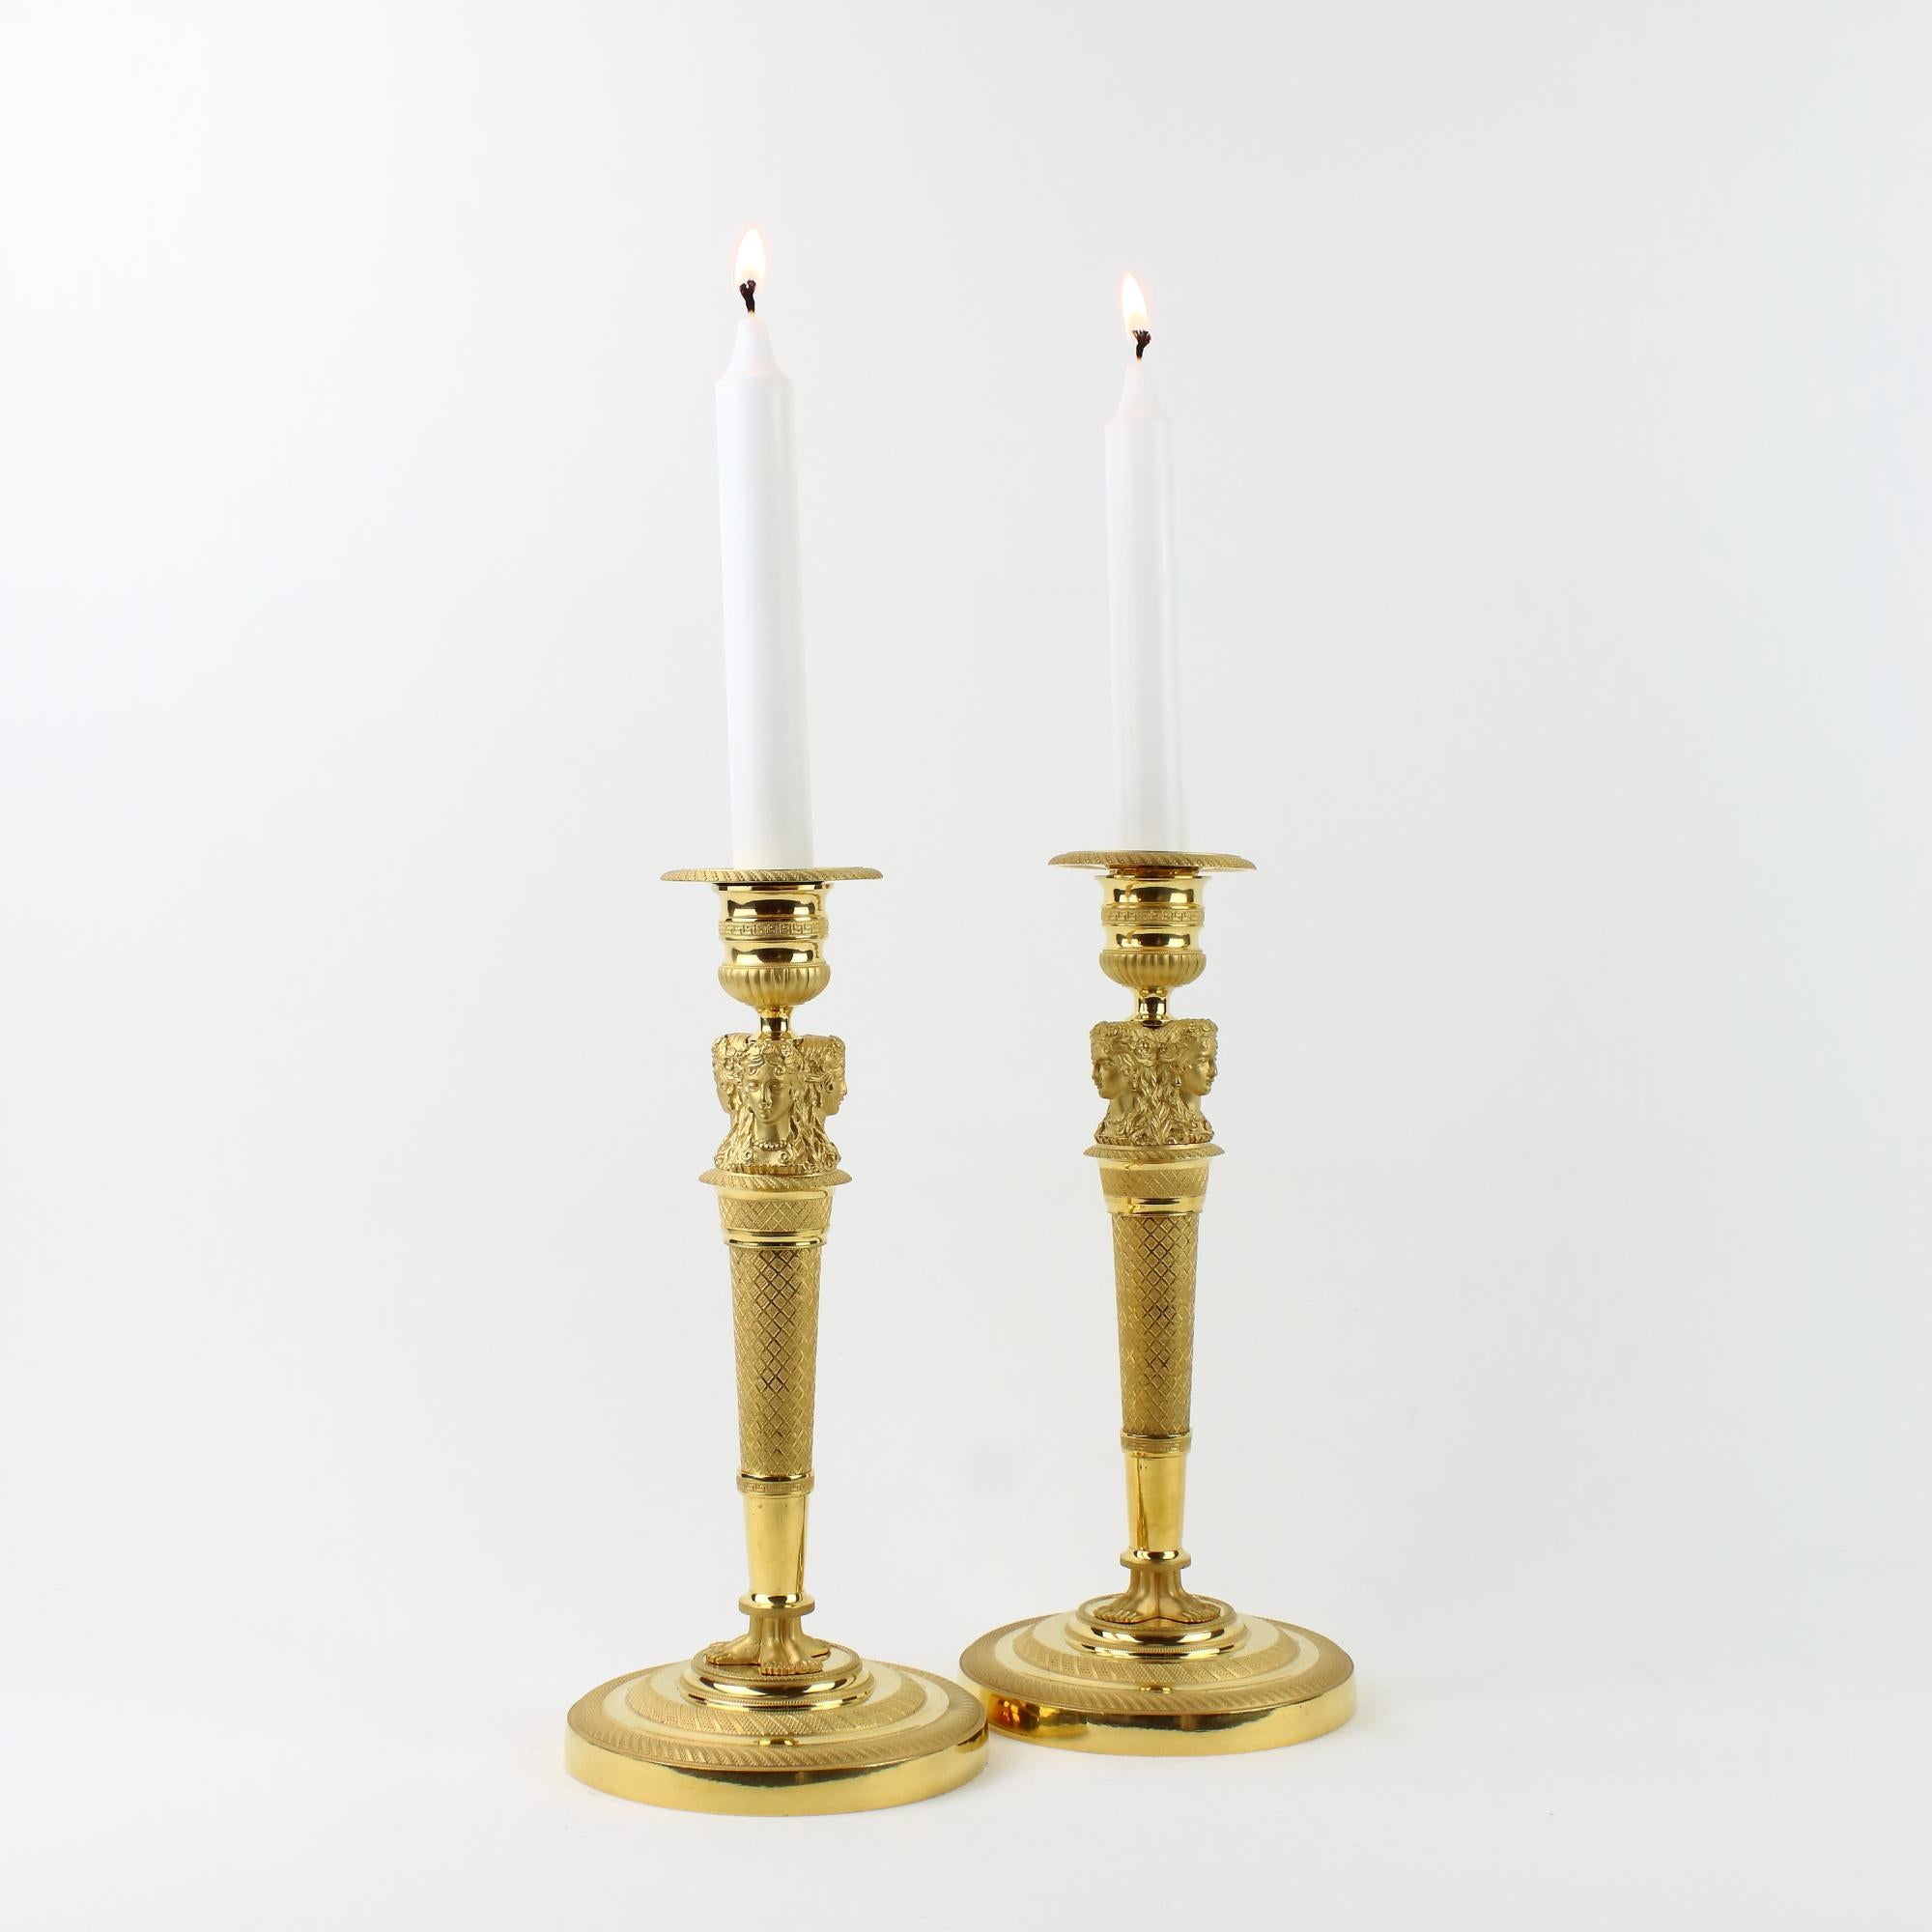 Paar französische Empire-Kerzenständer mit weiblichen Büsten aus vergoldeter Bronze aus dem frühen 19. Jahrhundert, um 1820

Ein schönes Paar Empire-Kerzenständer aus vergoldeter Bronze und Goldbronze, verziert mit drei weiblichen Büsten oder